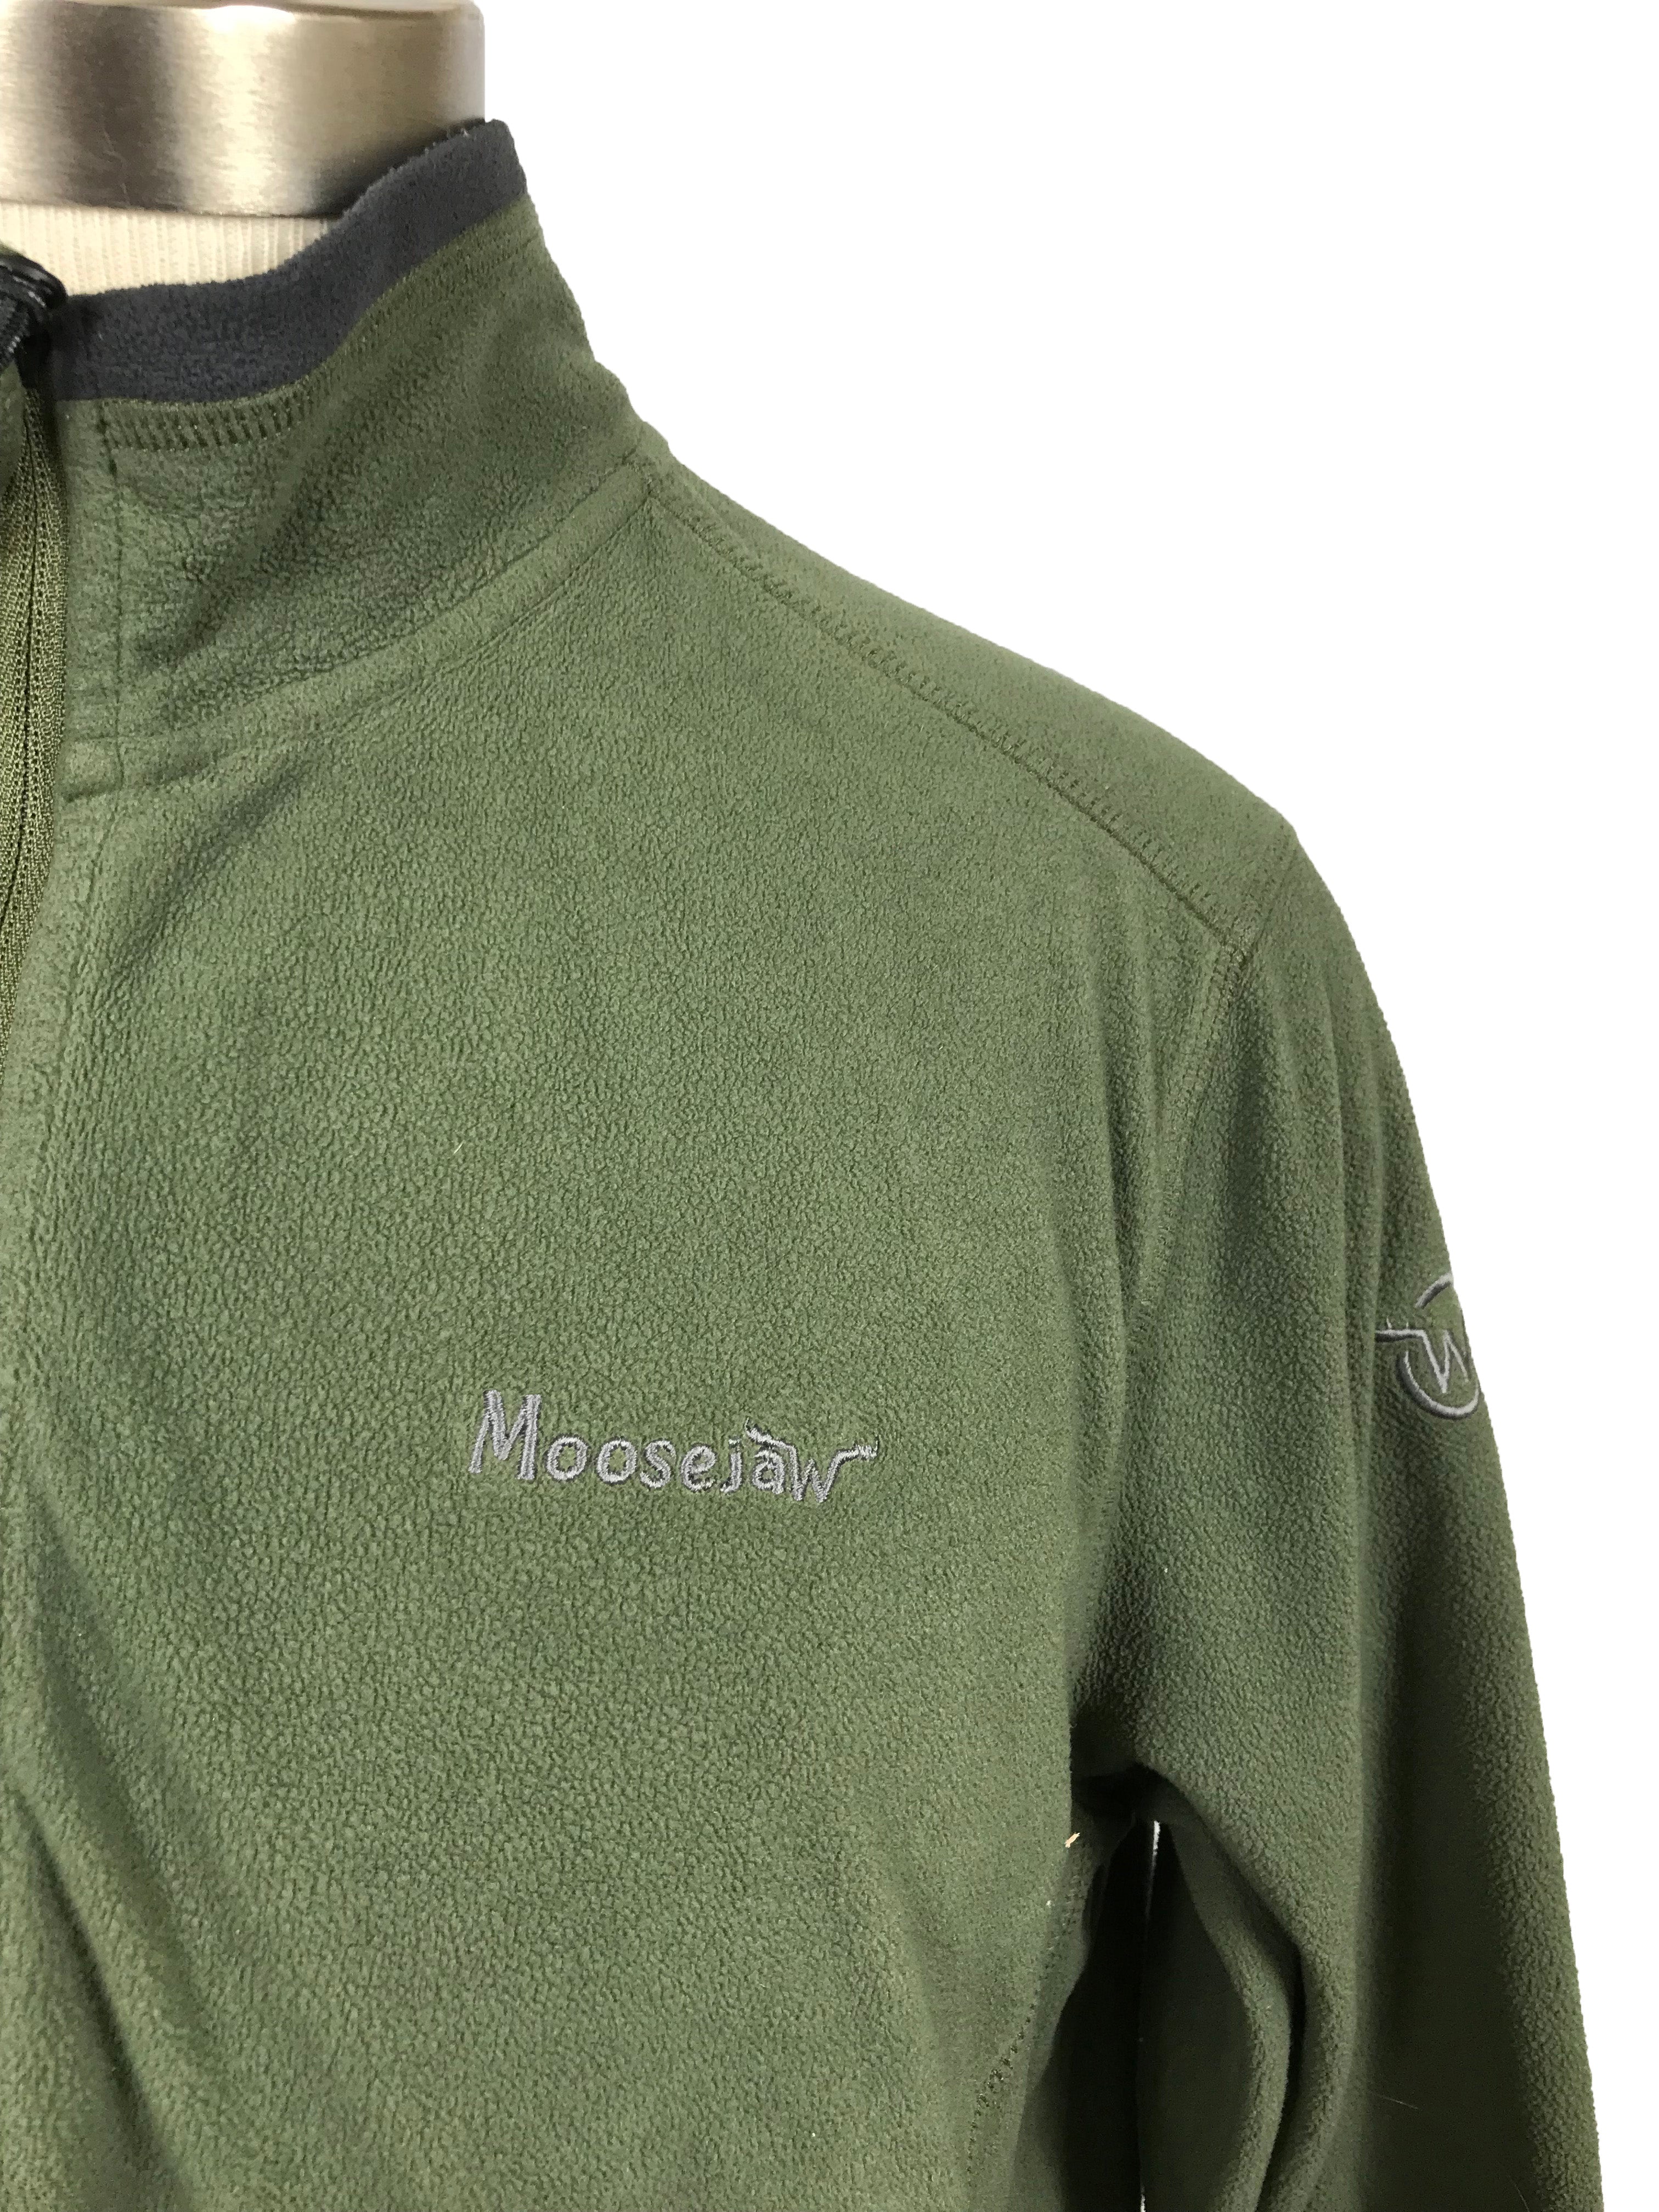 Moosejaw Green Fleece Quarter-Zip Pullover Men's Size S/M